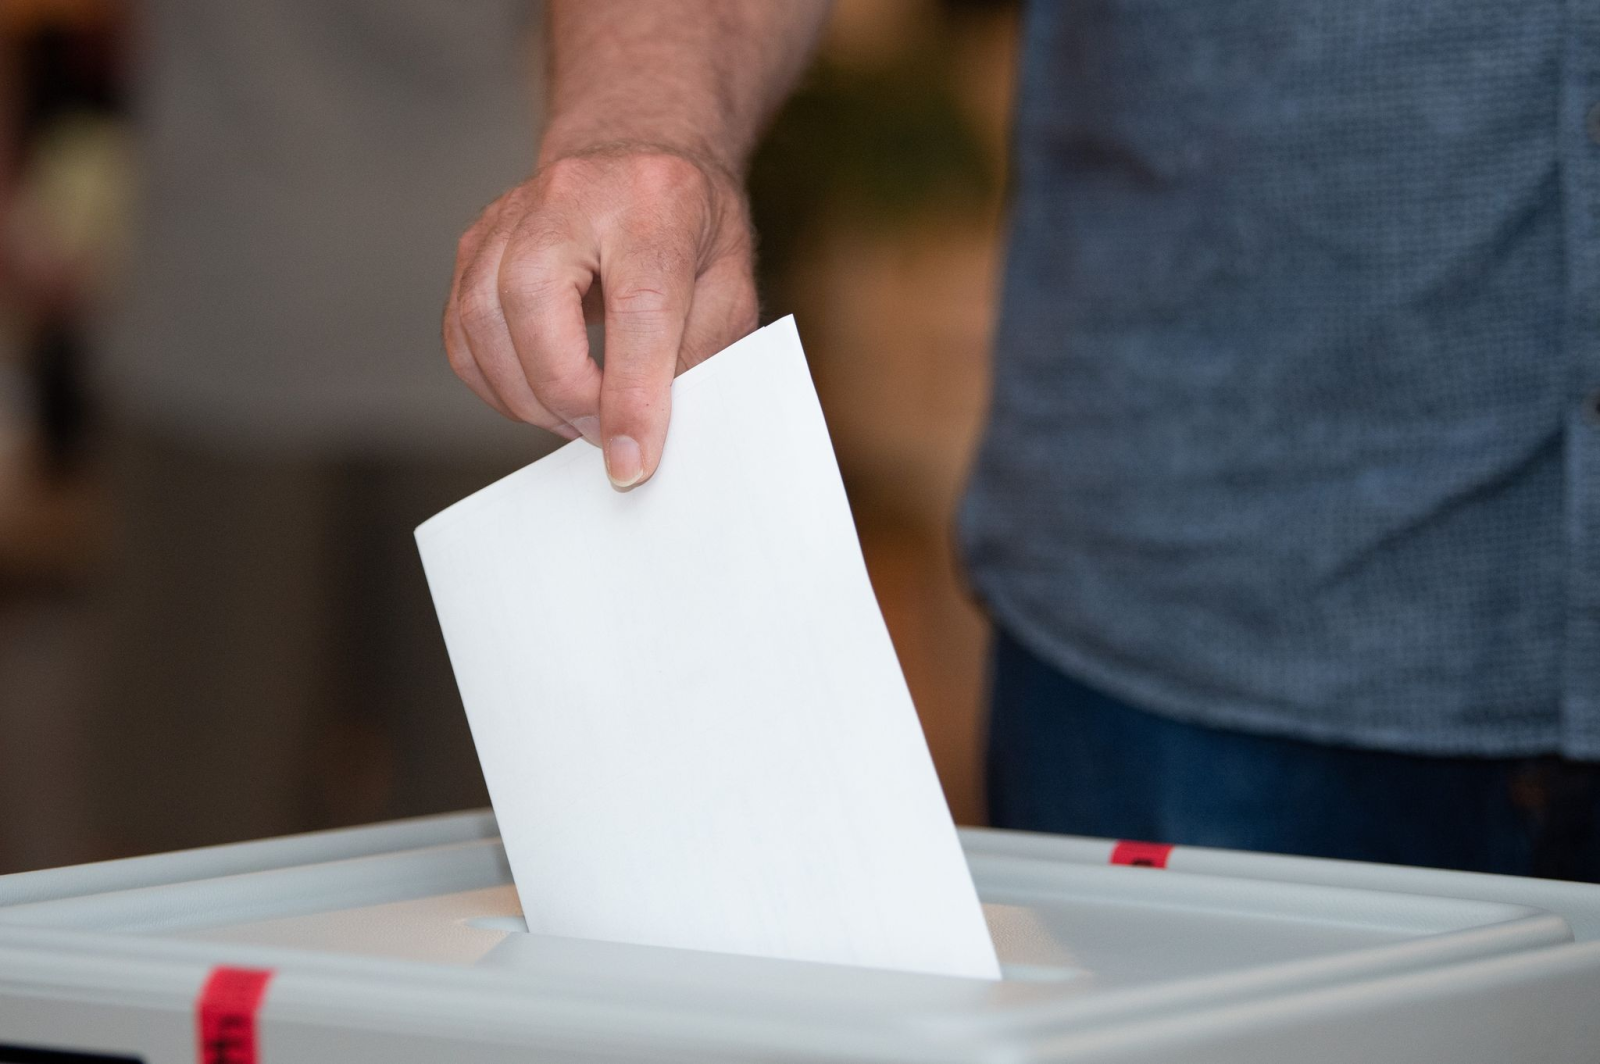 Ein Wähler wirft in einem Wahllokal seinen Stimmzettel in die Wahlurne.